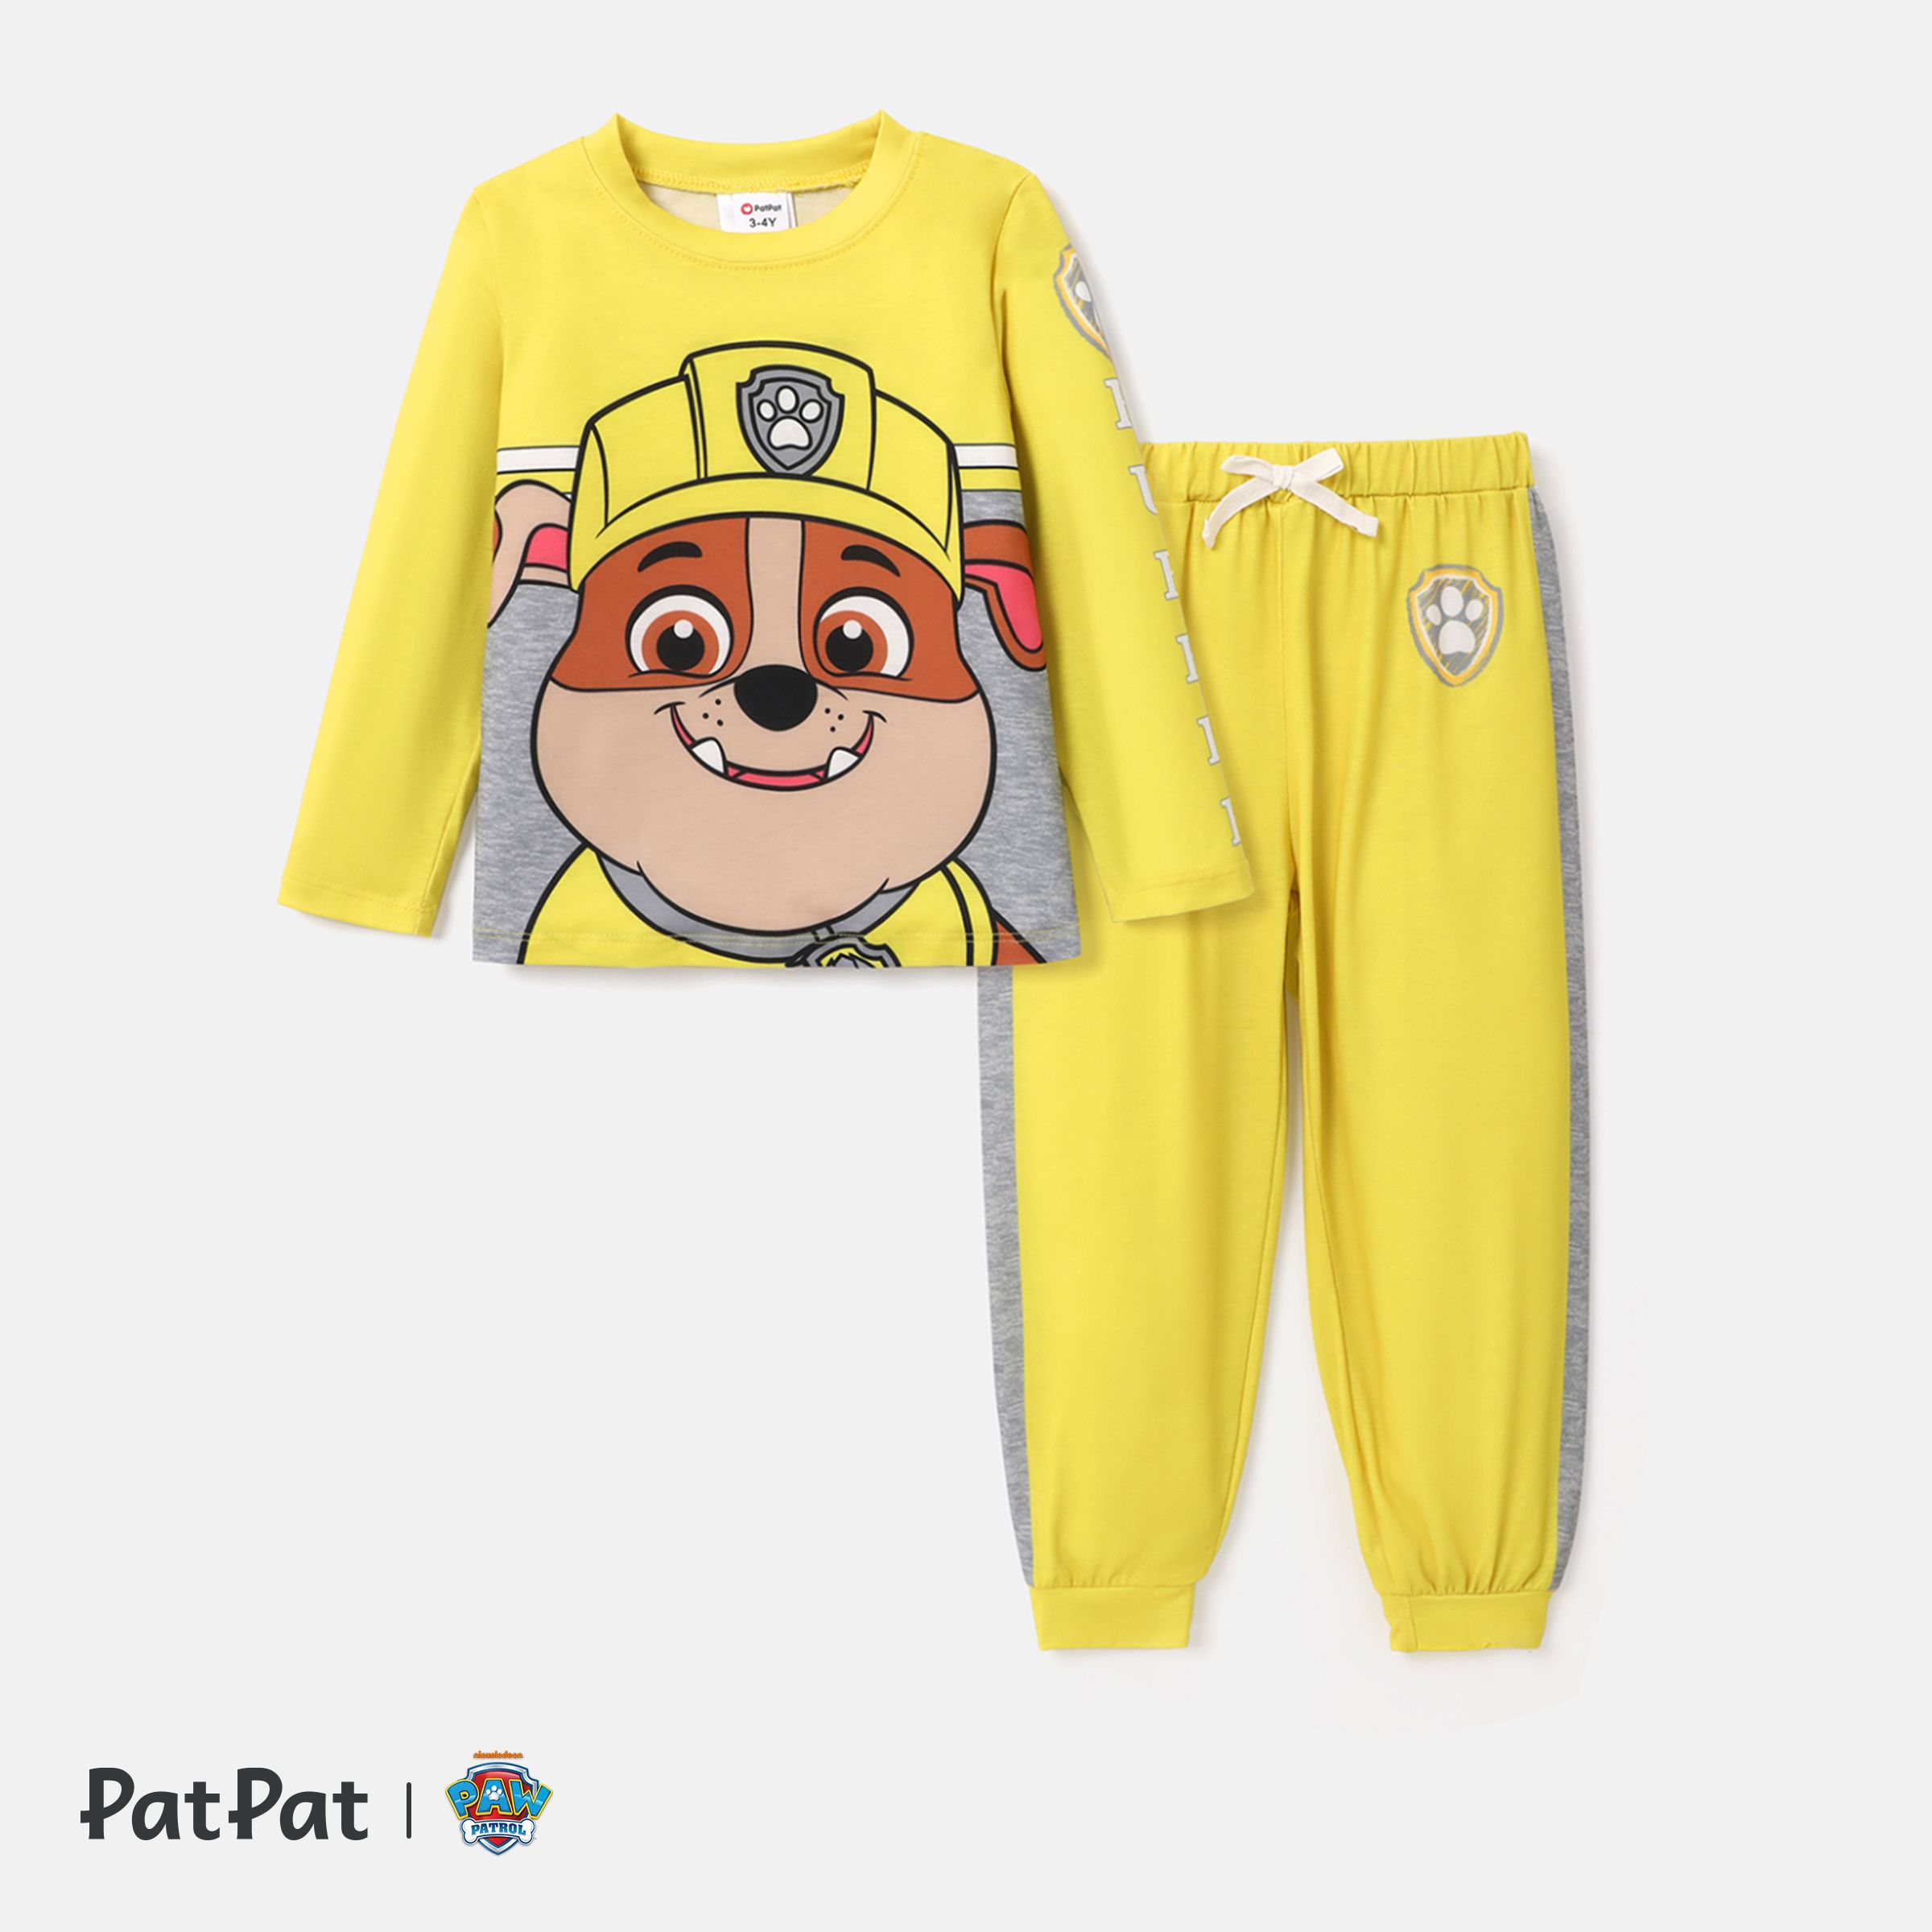 PAW Patrol Toddler Boy/Girl 2-Piece Cartoon Print Top And Pants Set